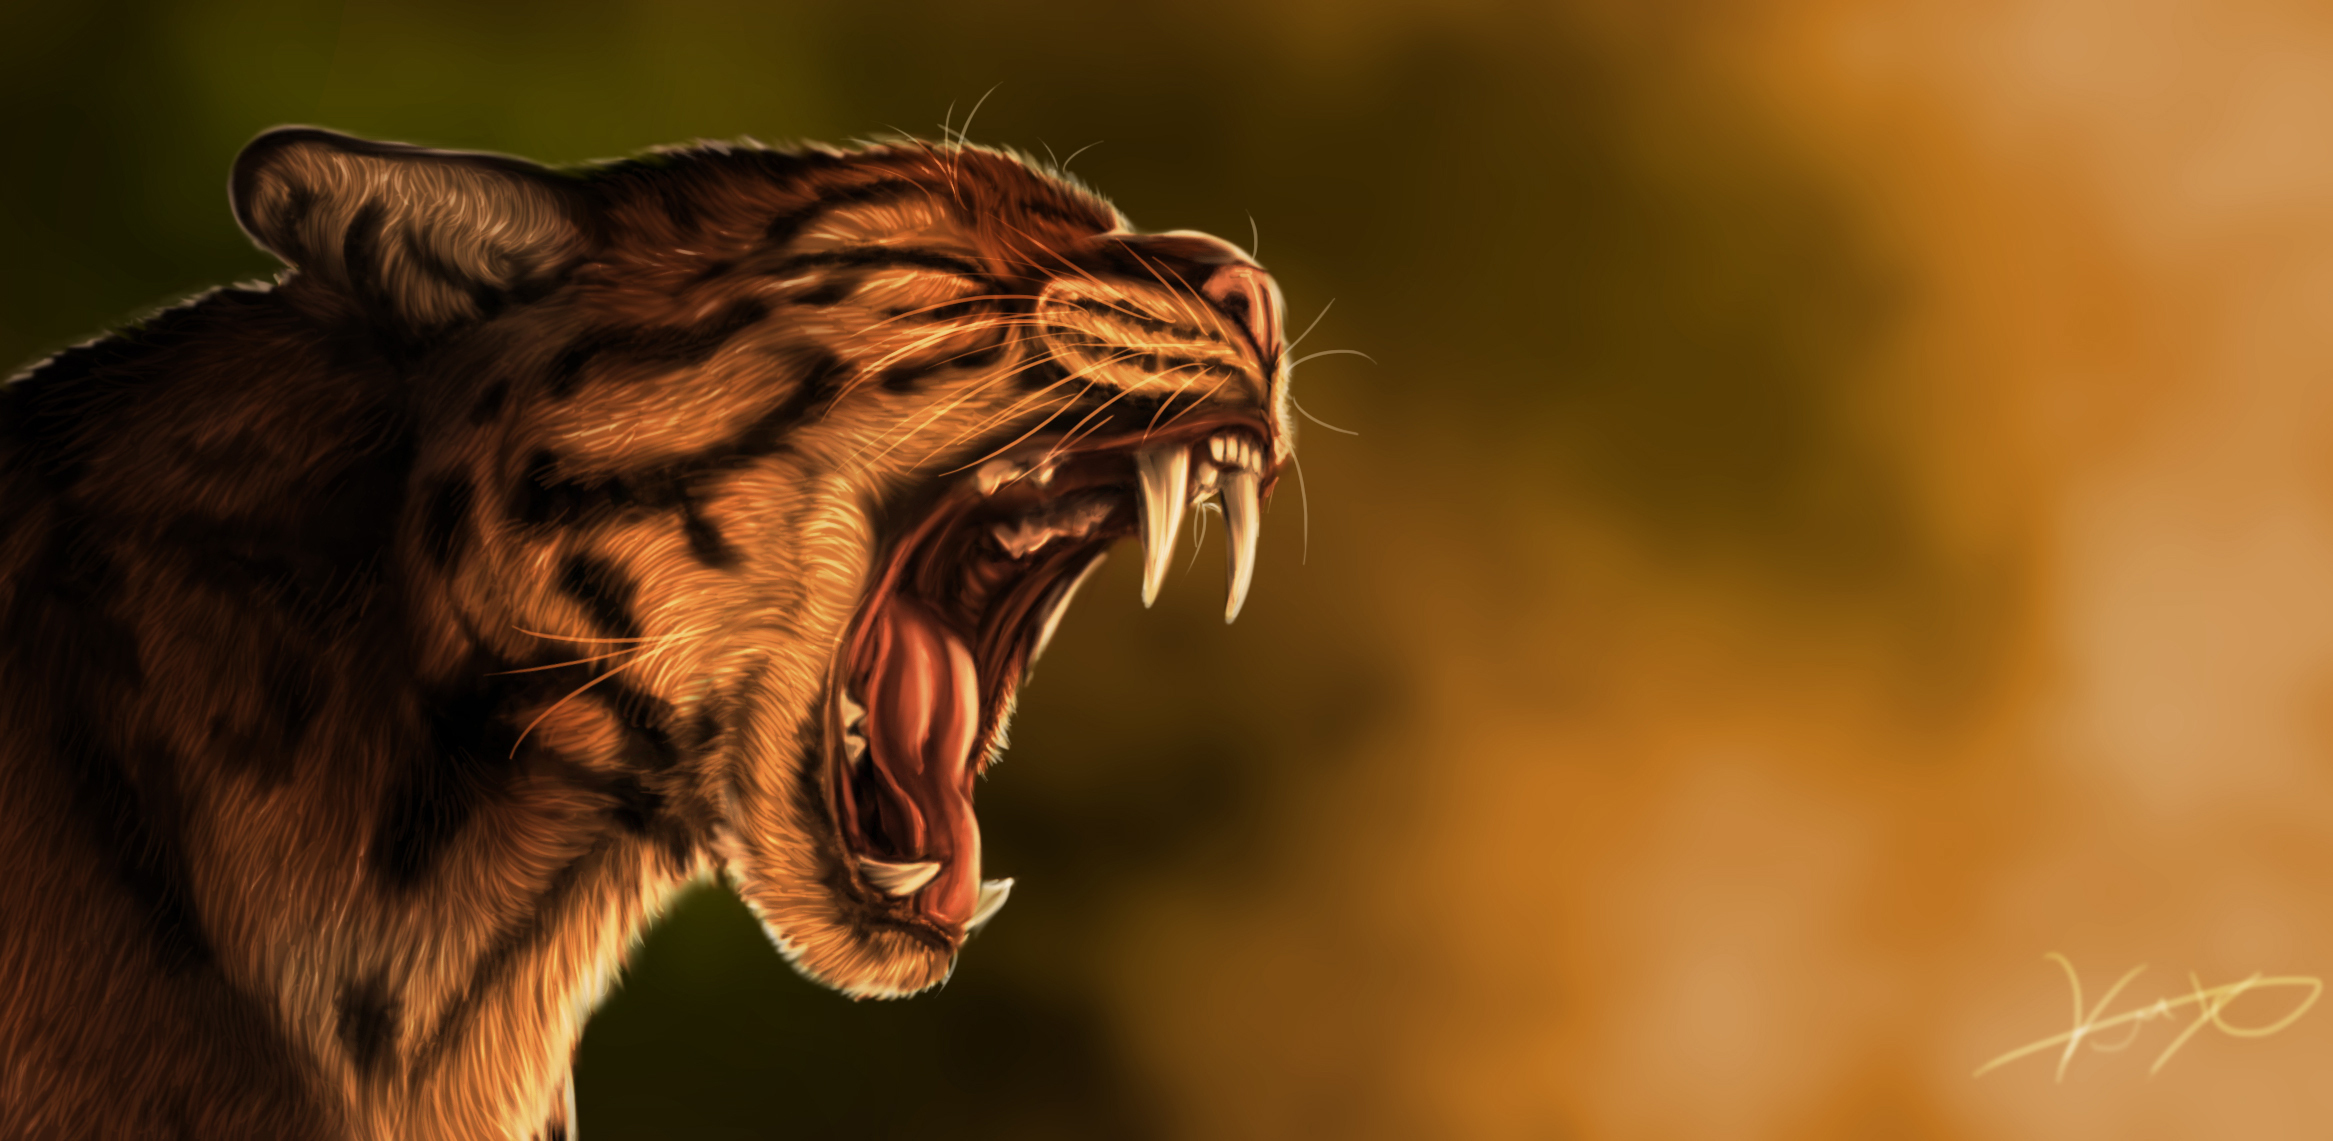 Wildcat HD Wallpaper Background Image